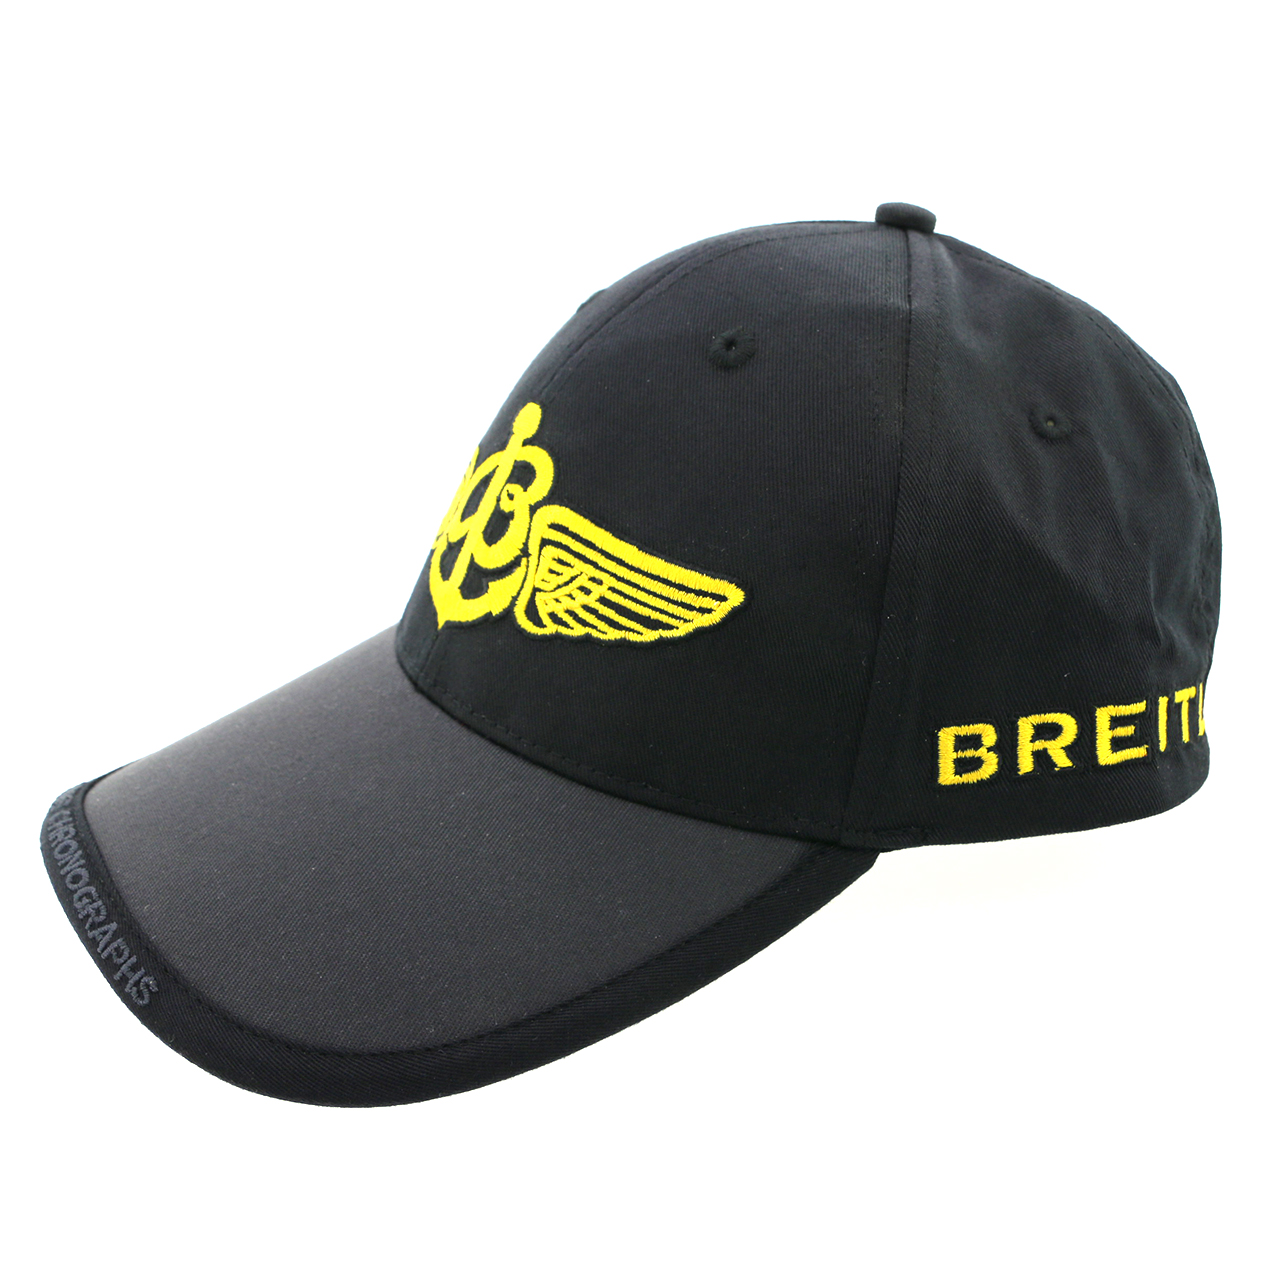 Breitling cap